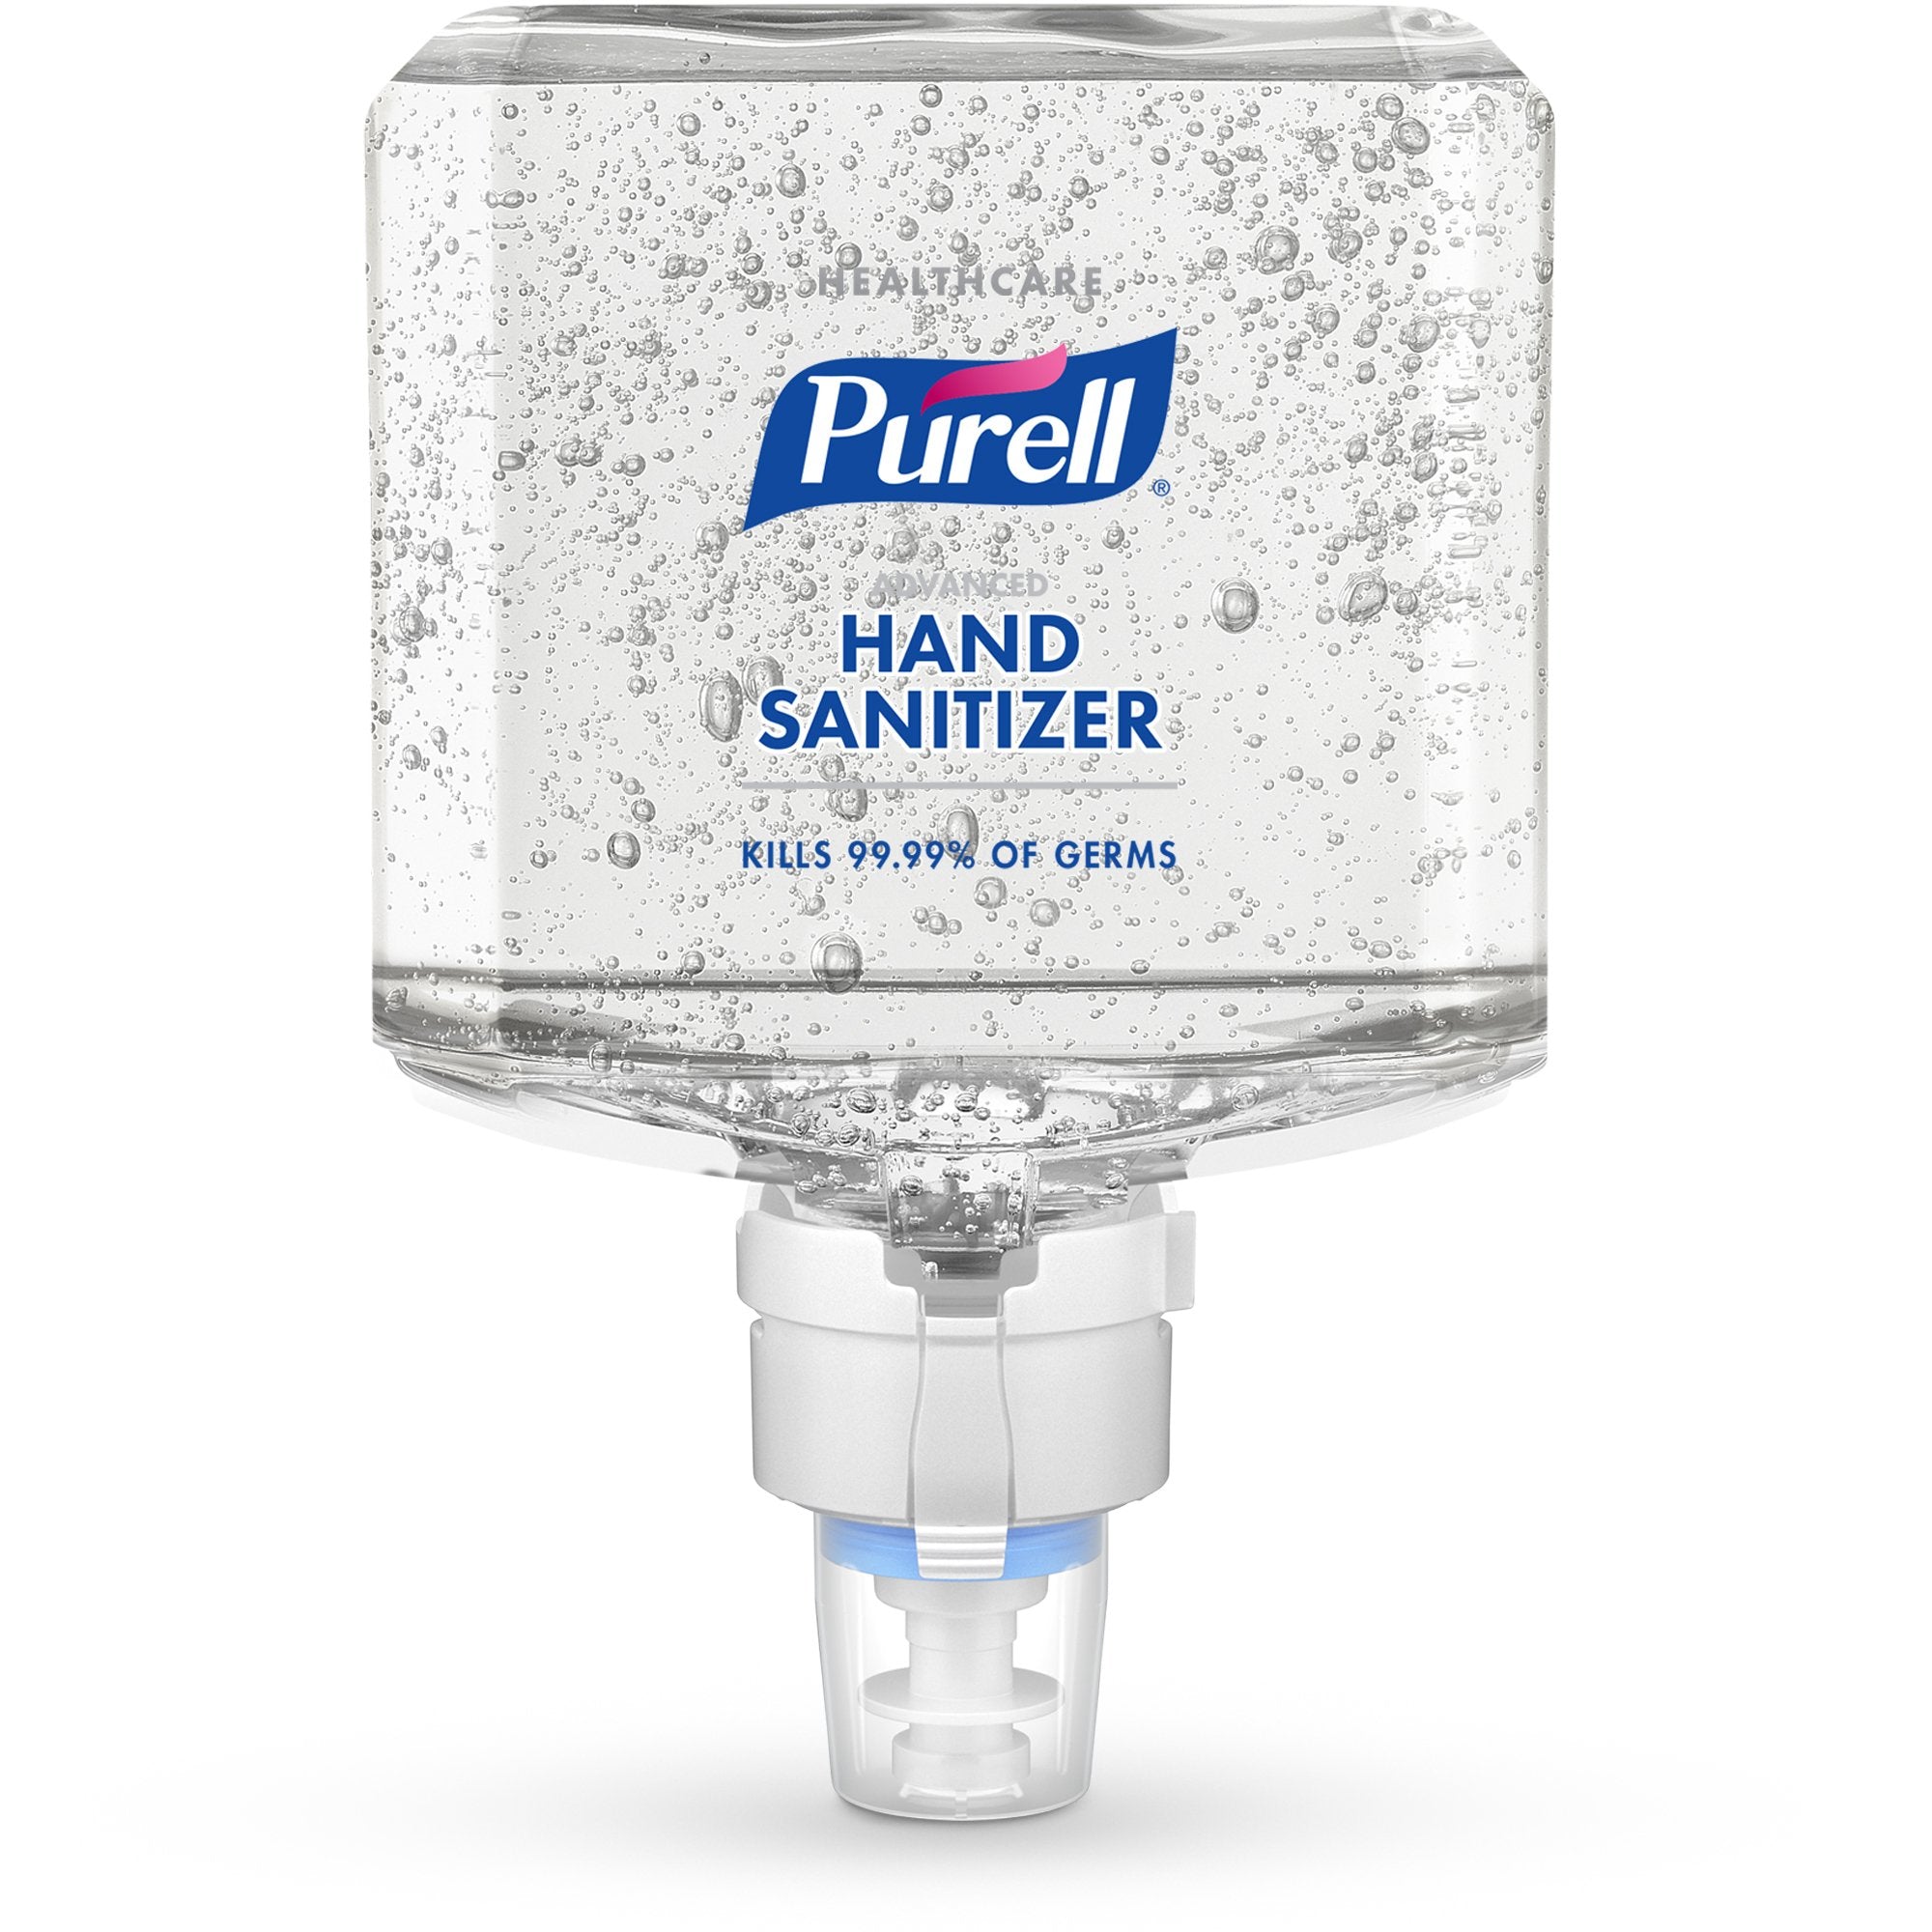 Hand Sanitizer Purell Healthcare Advanced 1,200 mL Ethyl Alcohol Gel Dispenser Refill Bottle